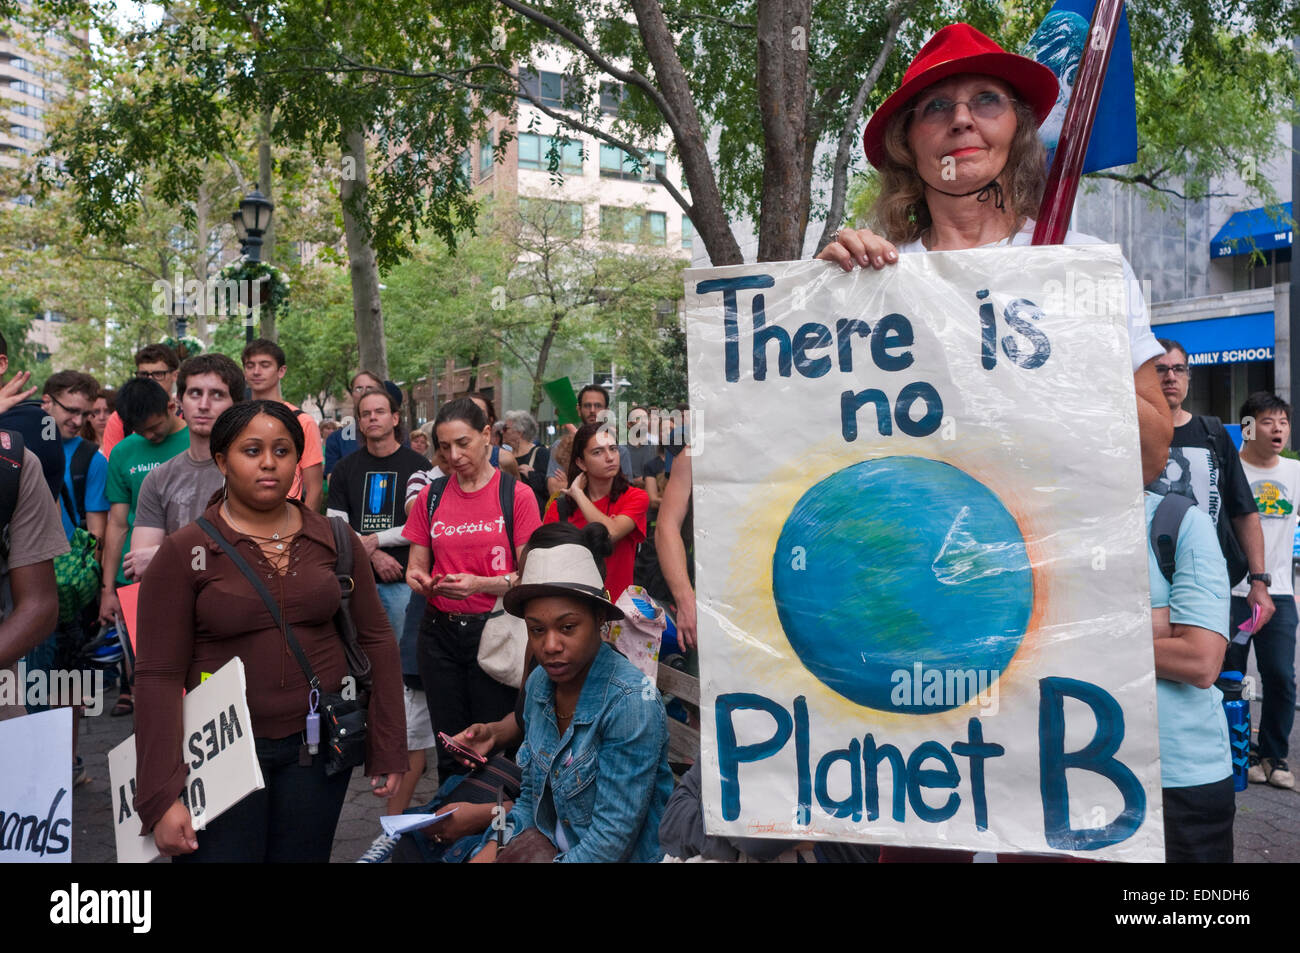 New York, NY 24 Septembre 2011 - 350. org lance Planète en mouvement - une journée mondiale de manifestations ont porté sur le déplacement de la planète loin de combustibles fossiles vers un avenir climatique plus sûr. Dans la ville de New York les écologistes se sont rassemblés à Dag Hammarskjöld Plaza, près de l'ONU, d'appeler l'attention sur le changement climatique. Partie d'une action à l'échelle mondiale organisé par Planète en mouvement appel aux dirigeants du monde entier à s'orienter vers des sources d'énergie verte et à l'écart de charbon. ©Stacy Walsh Rosenstock/Alamy Banque D'Images